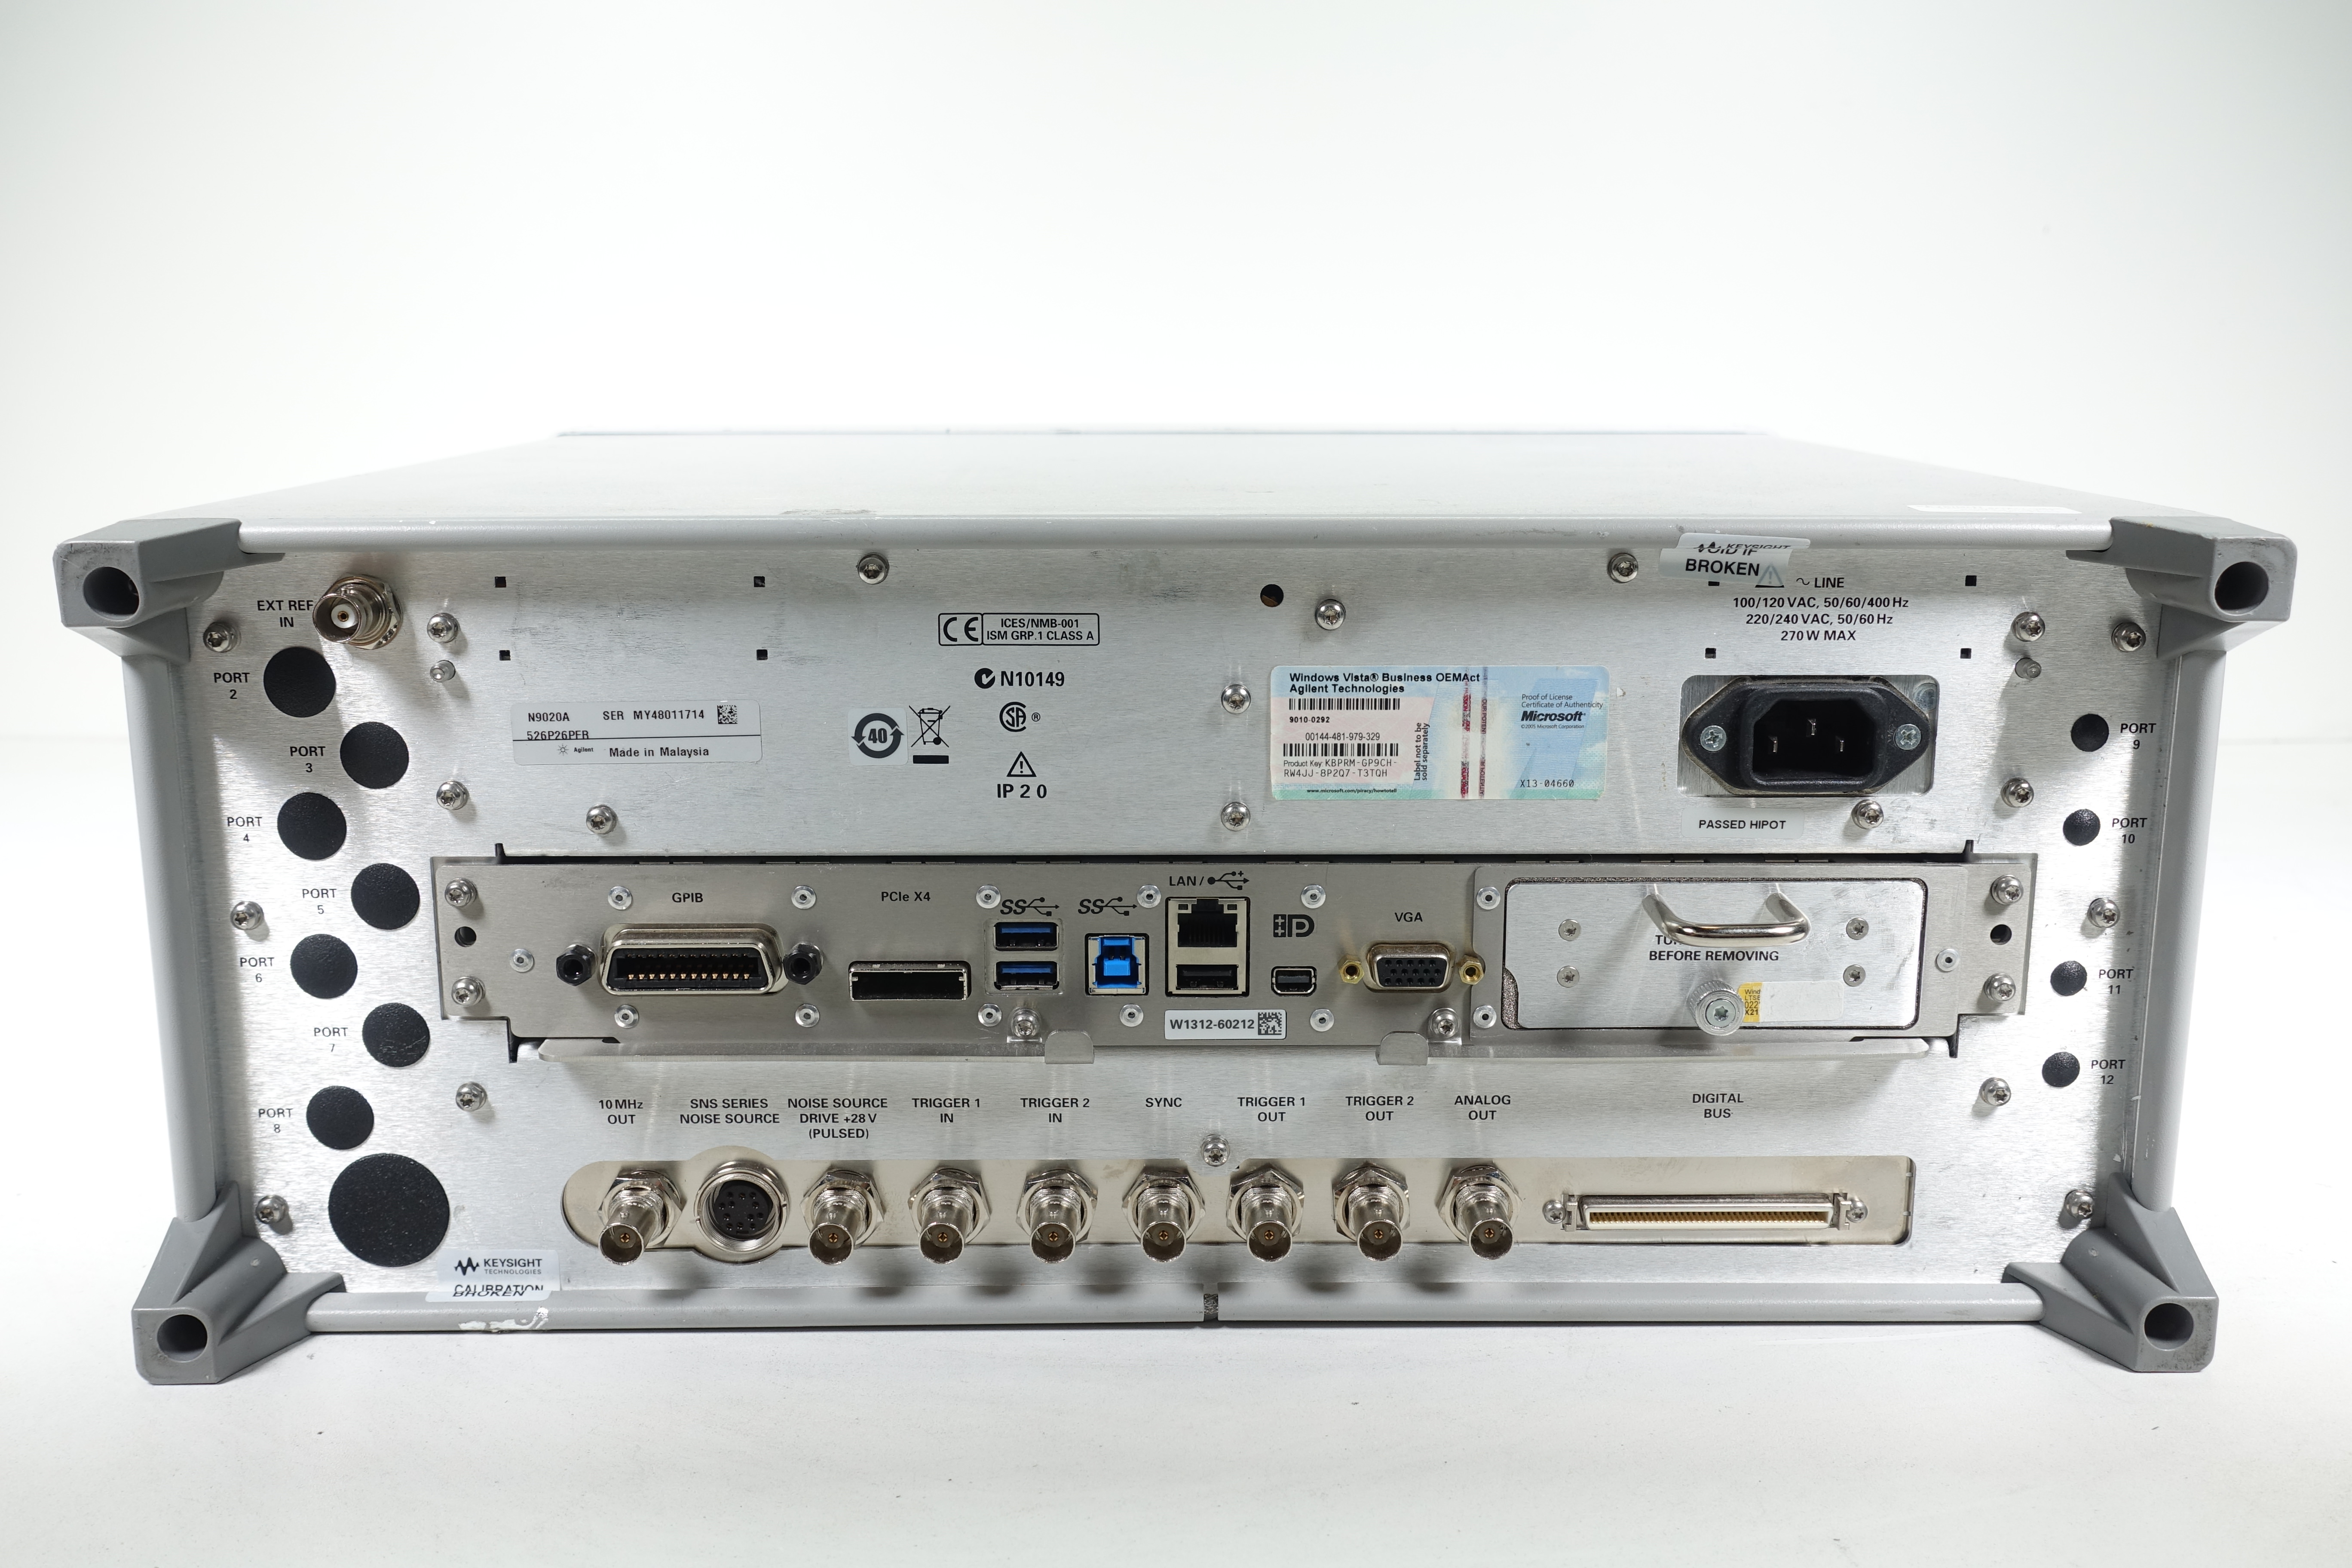 Keysight N9020A-526 10 Hz to 26.5 GHz